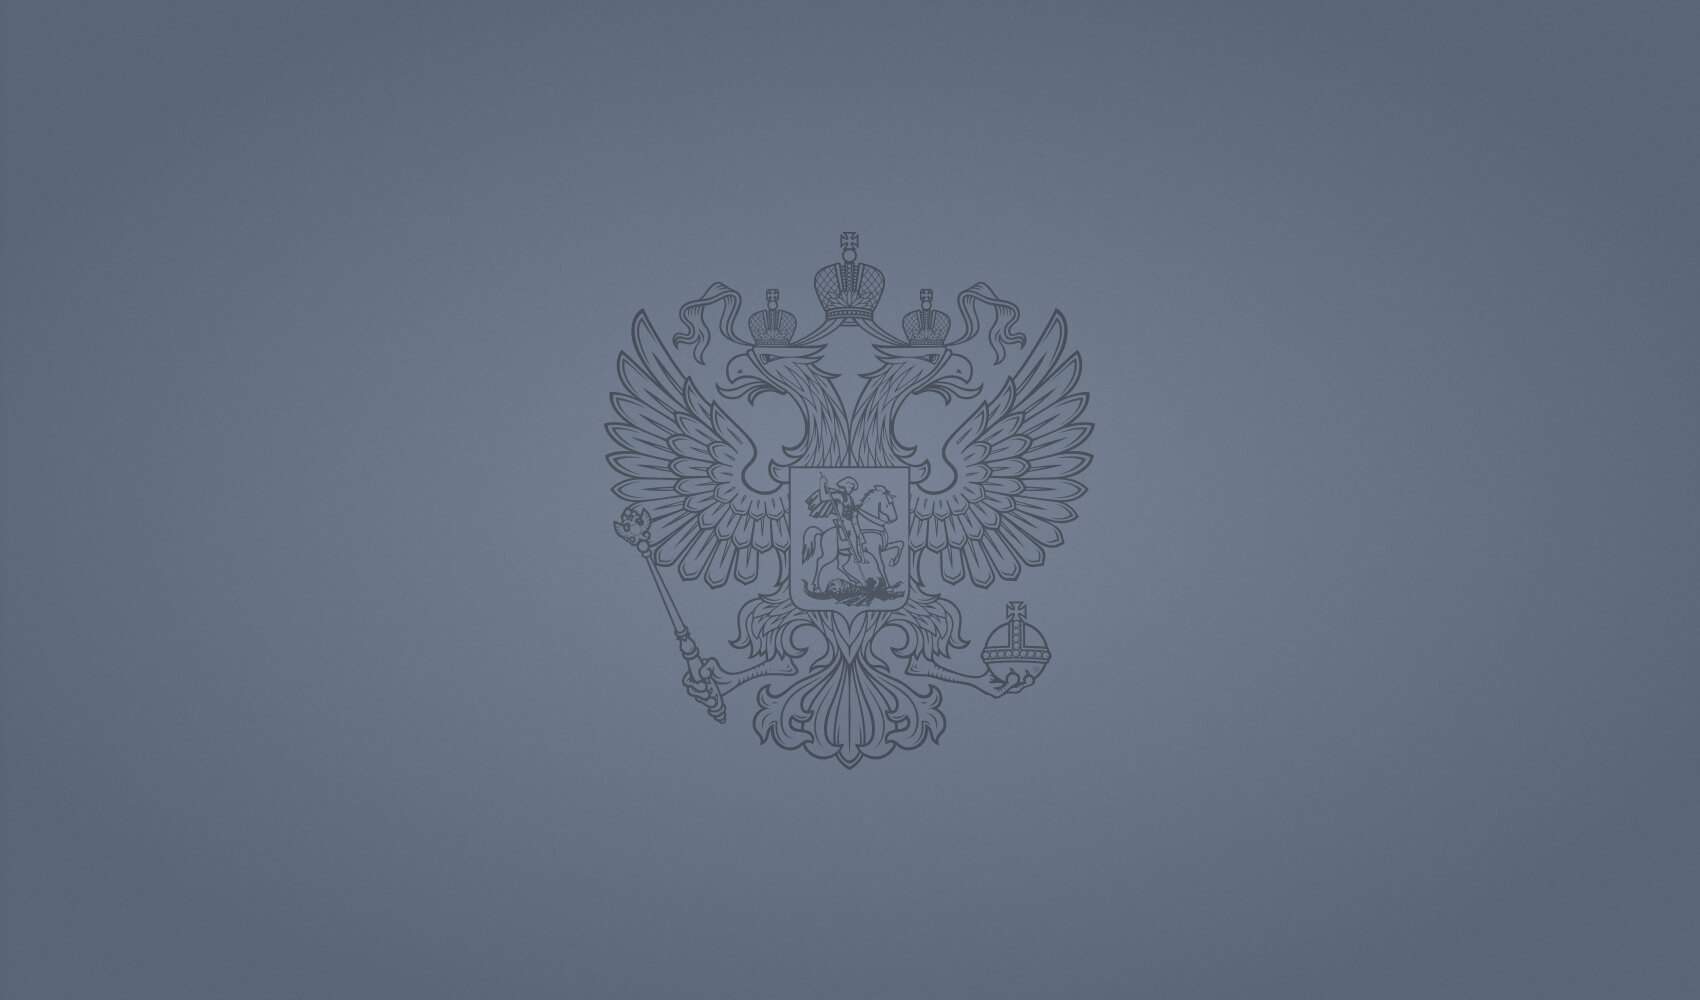 Rossiyskaya Gazeta website redesign